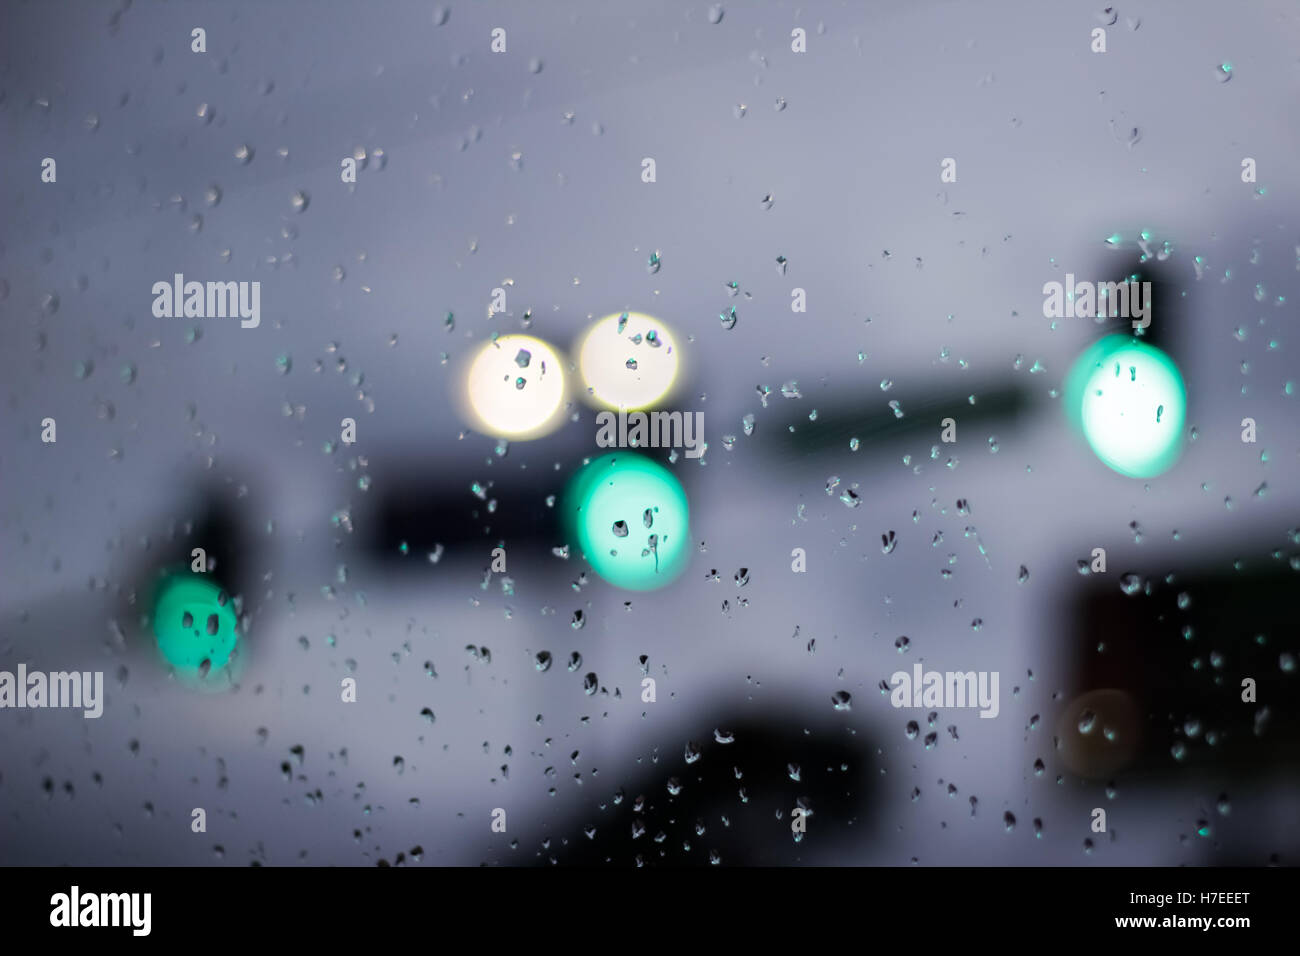 Photographie d'une scène de trafic à travers un verre humide et avec l'effet bokeh Banque D'Images